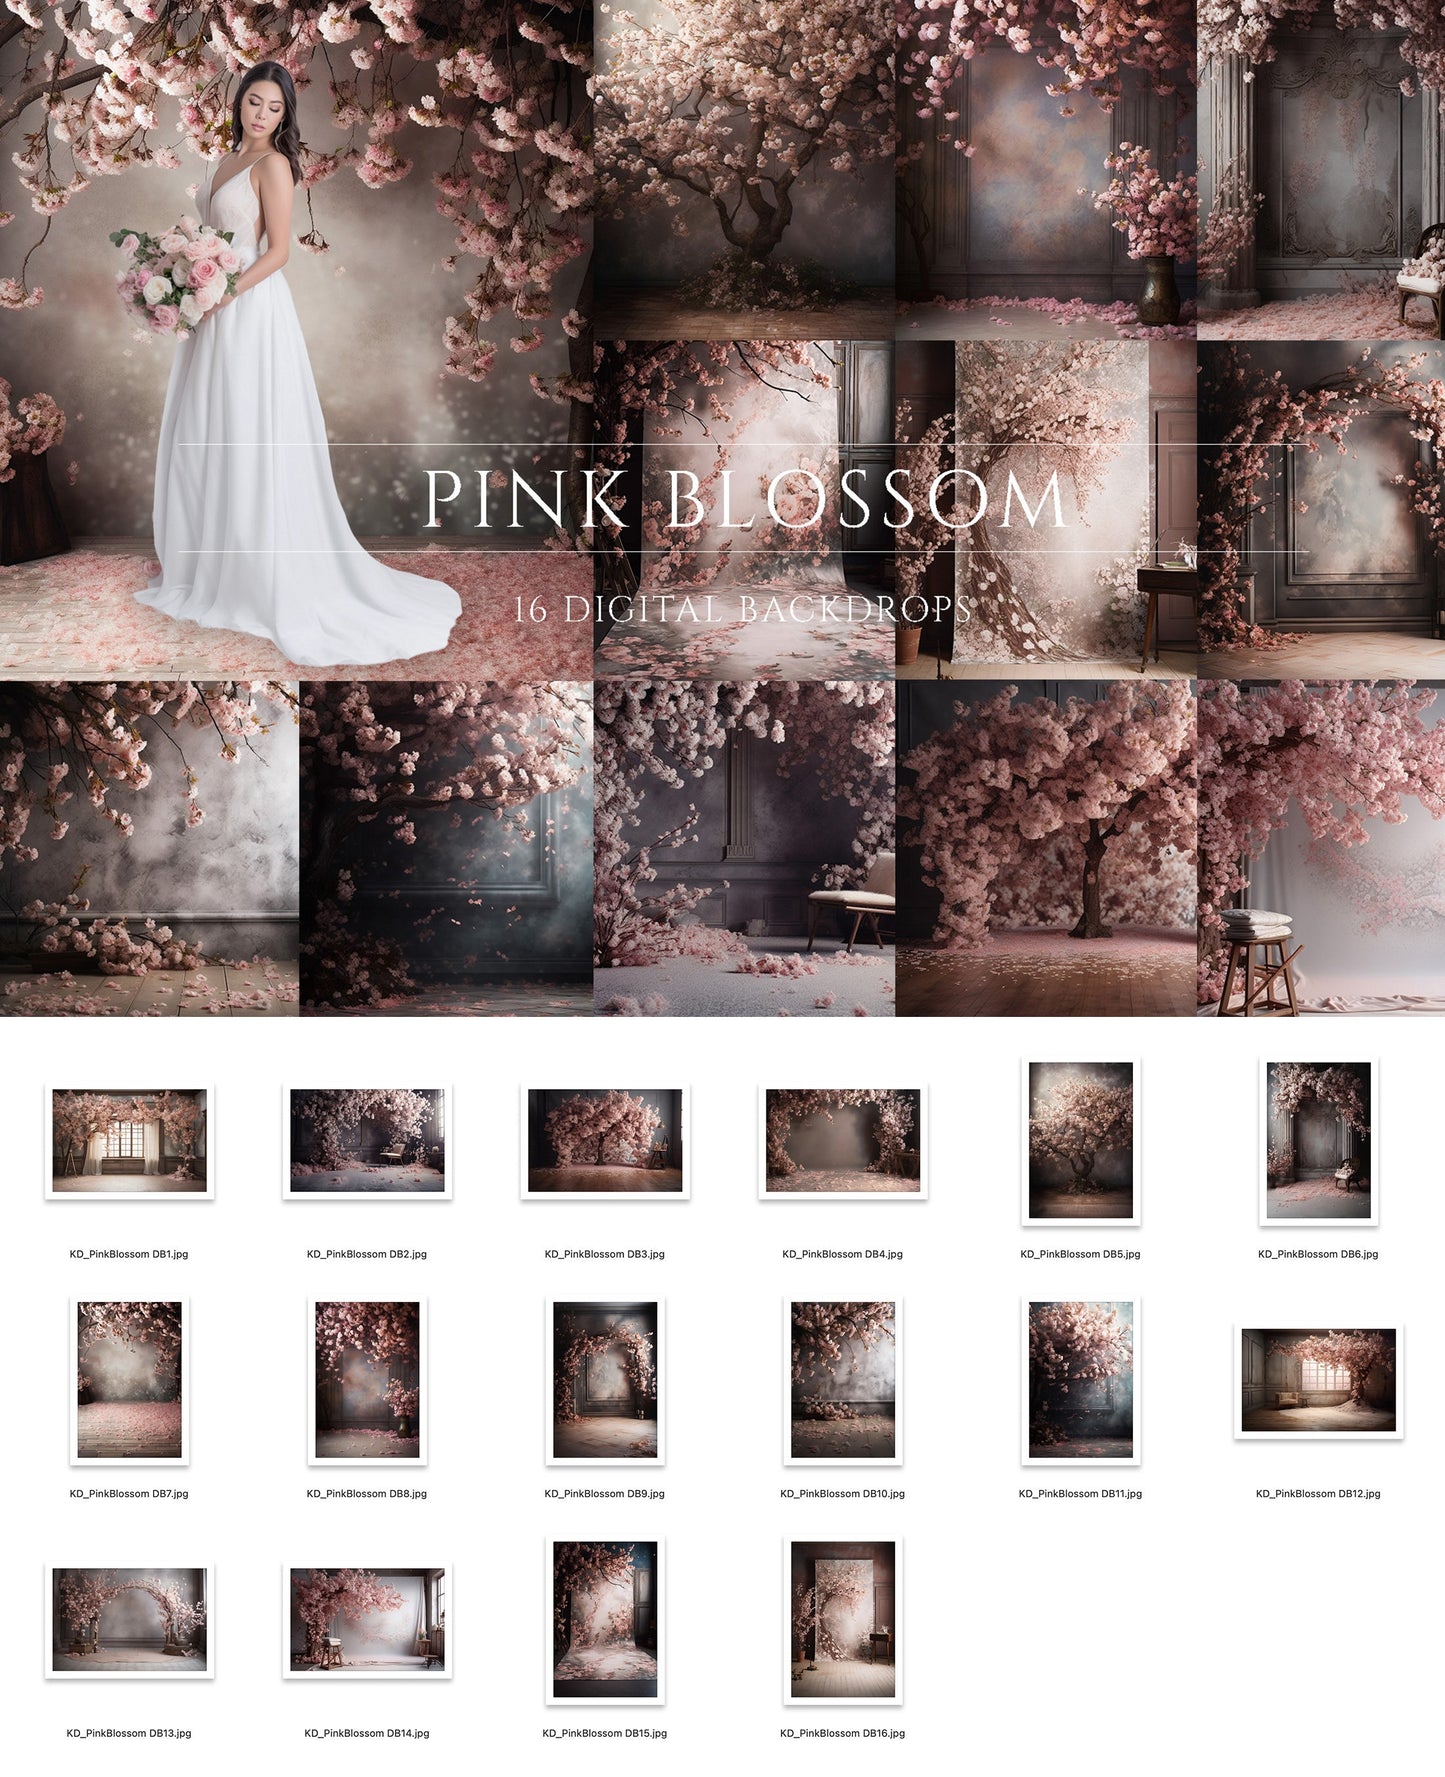 16 Pink Blossom Floral Digital Backdrops